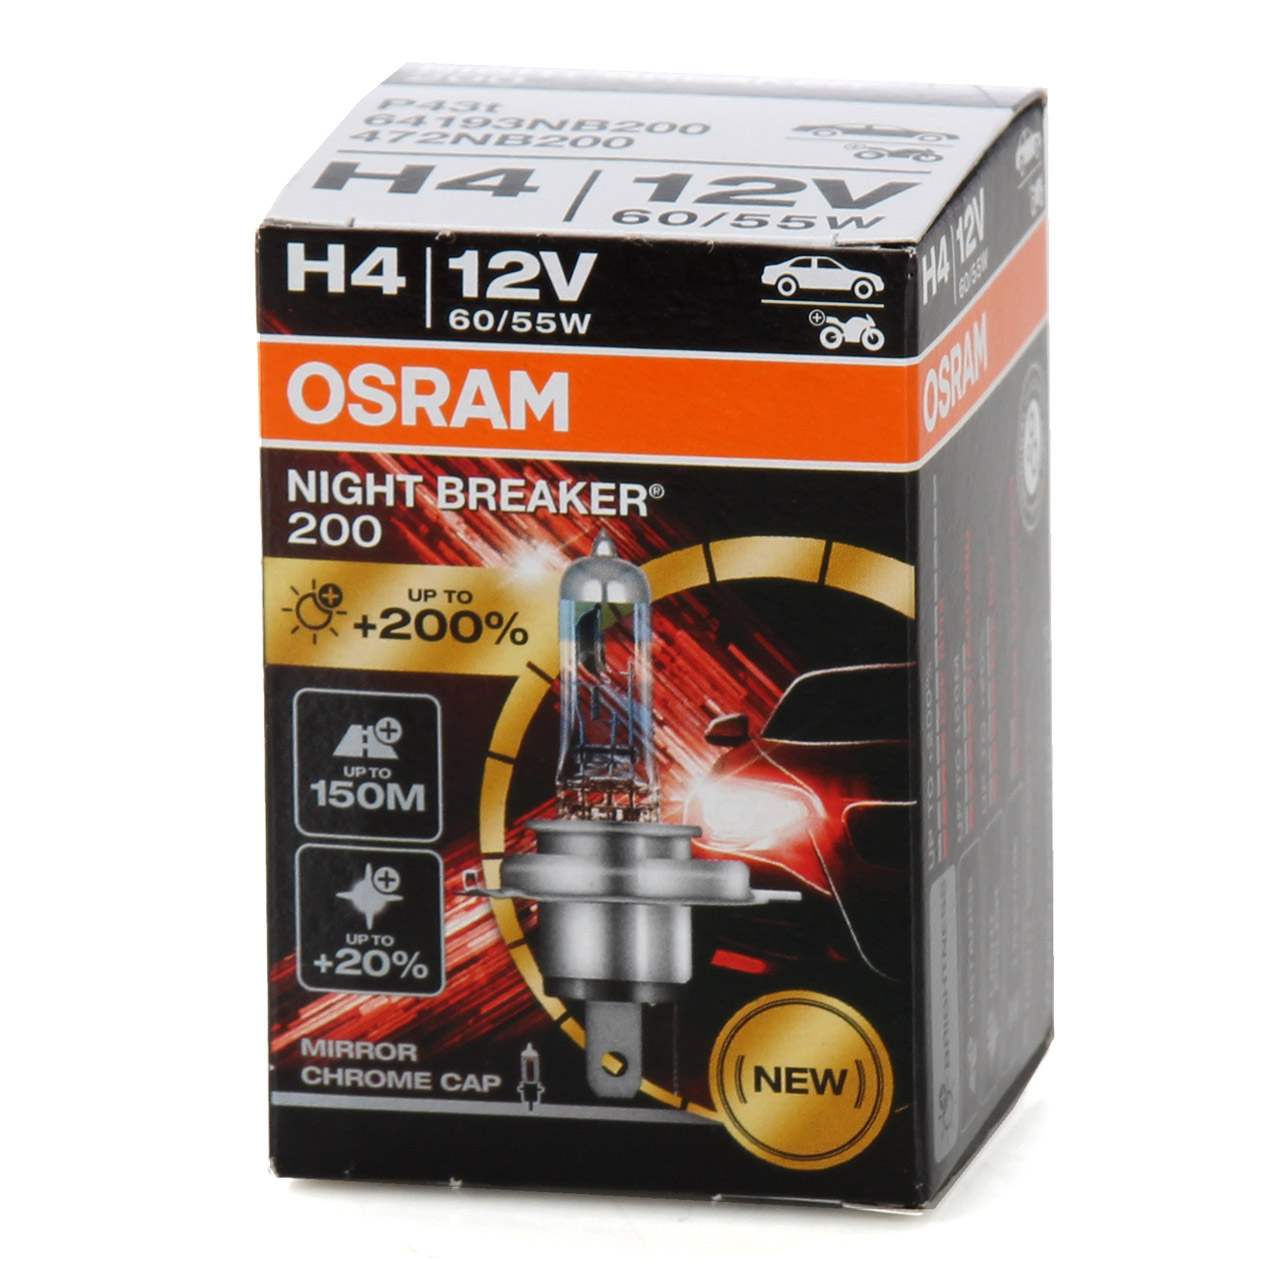 2x OSRAM Glühlampe H4 NIGHT BREAKER 200 12V 60/55W P43t +200% 64193NB200